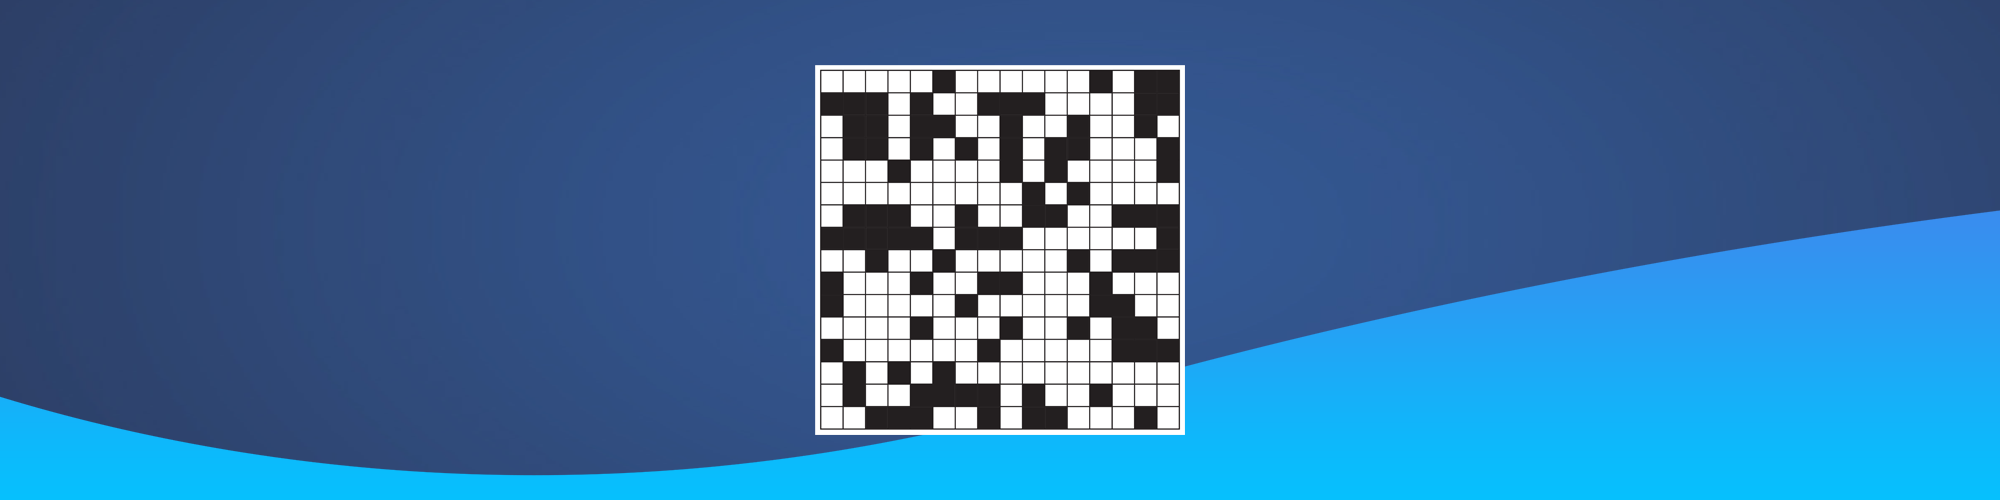 Volkskrant puzzel alternatief: speel puzzels op EazeGames